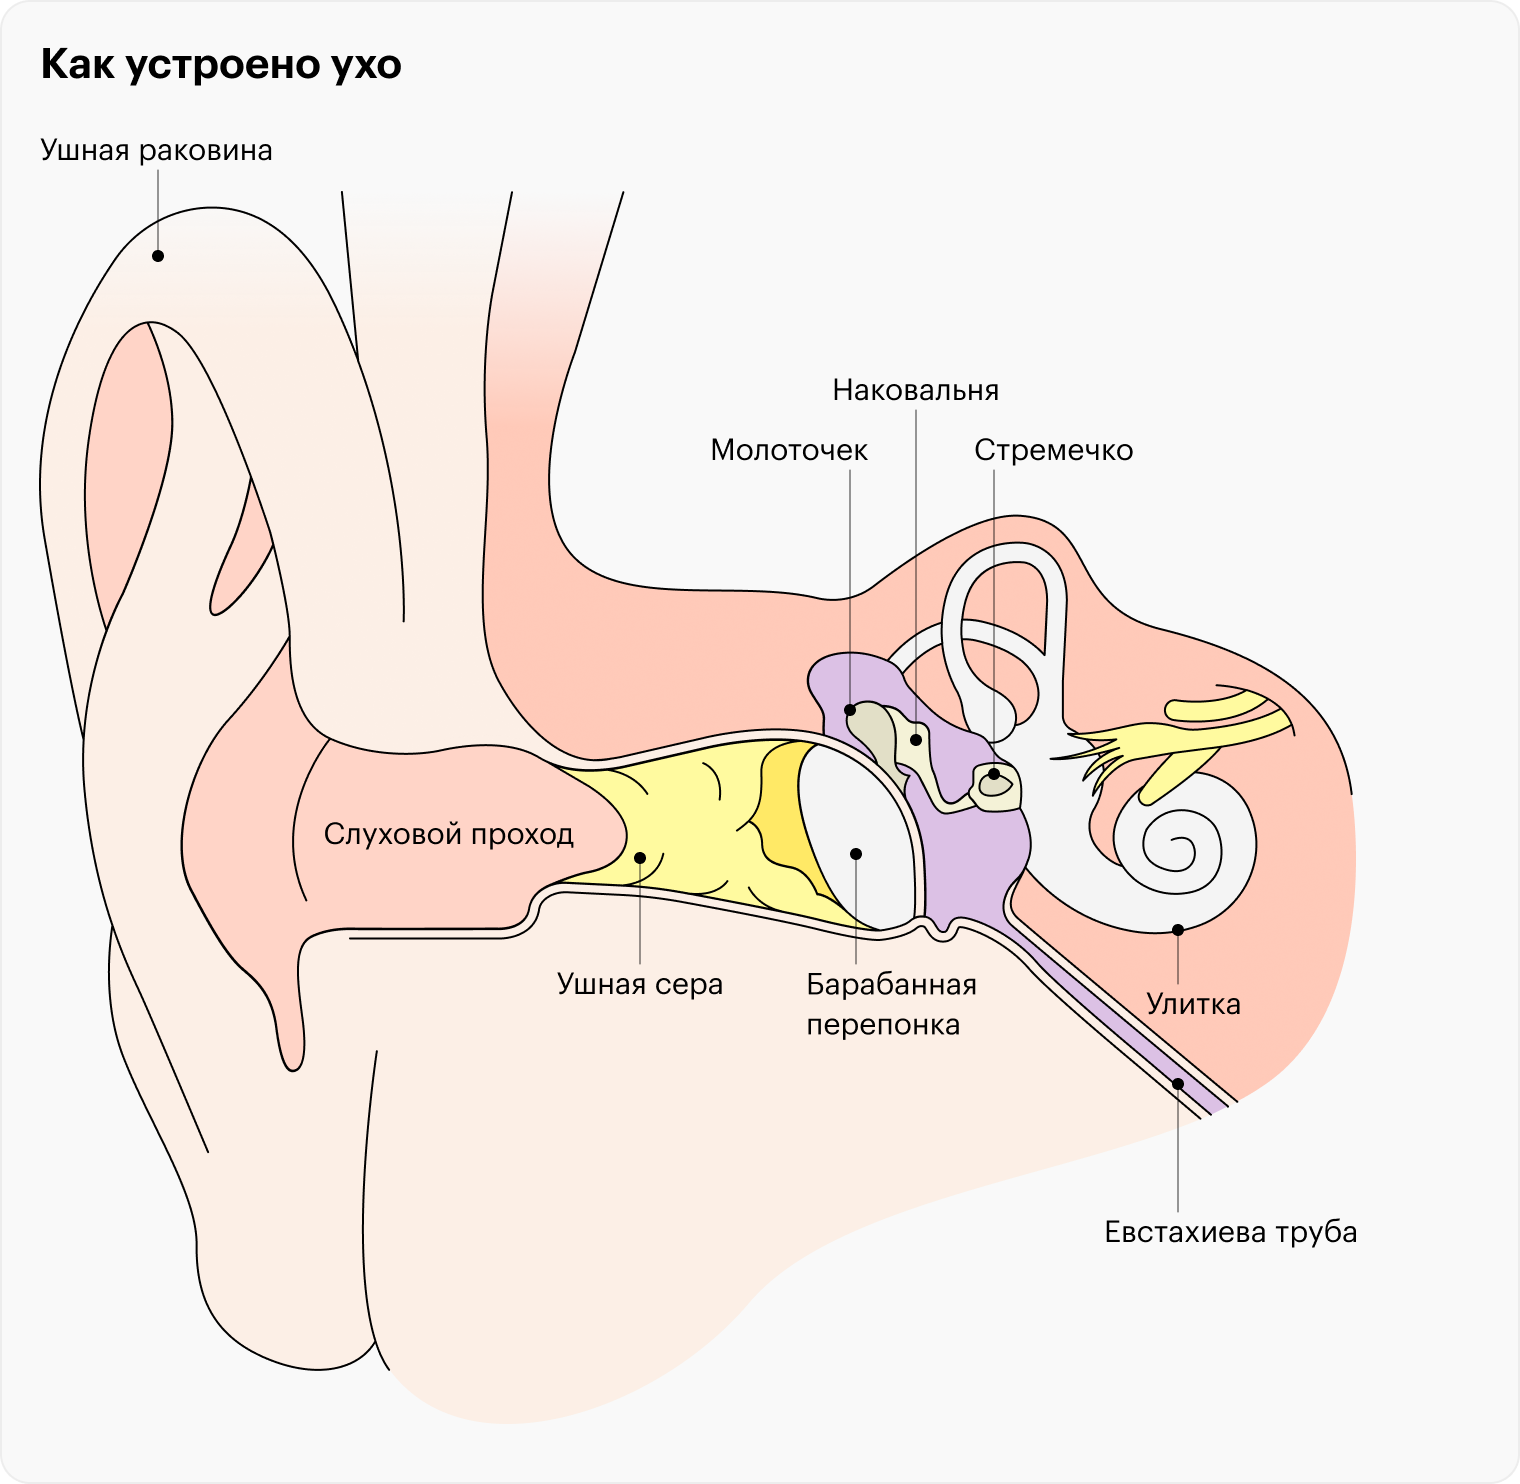 Среднее ухо расположено между наружным слуховым проходом, от которого оно отделено барабанной перепонкой, и внутренним ухом. Тут располагаются слуховые косточки, передающие звук